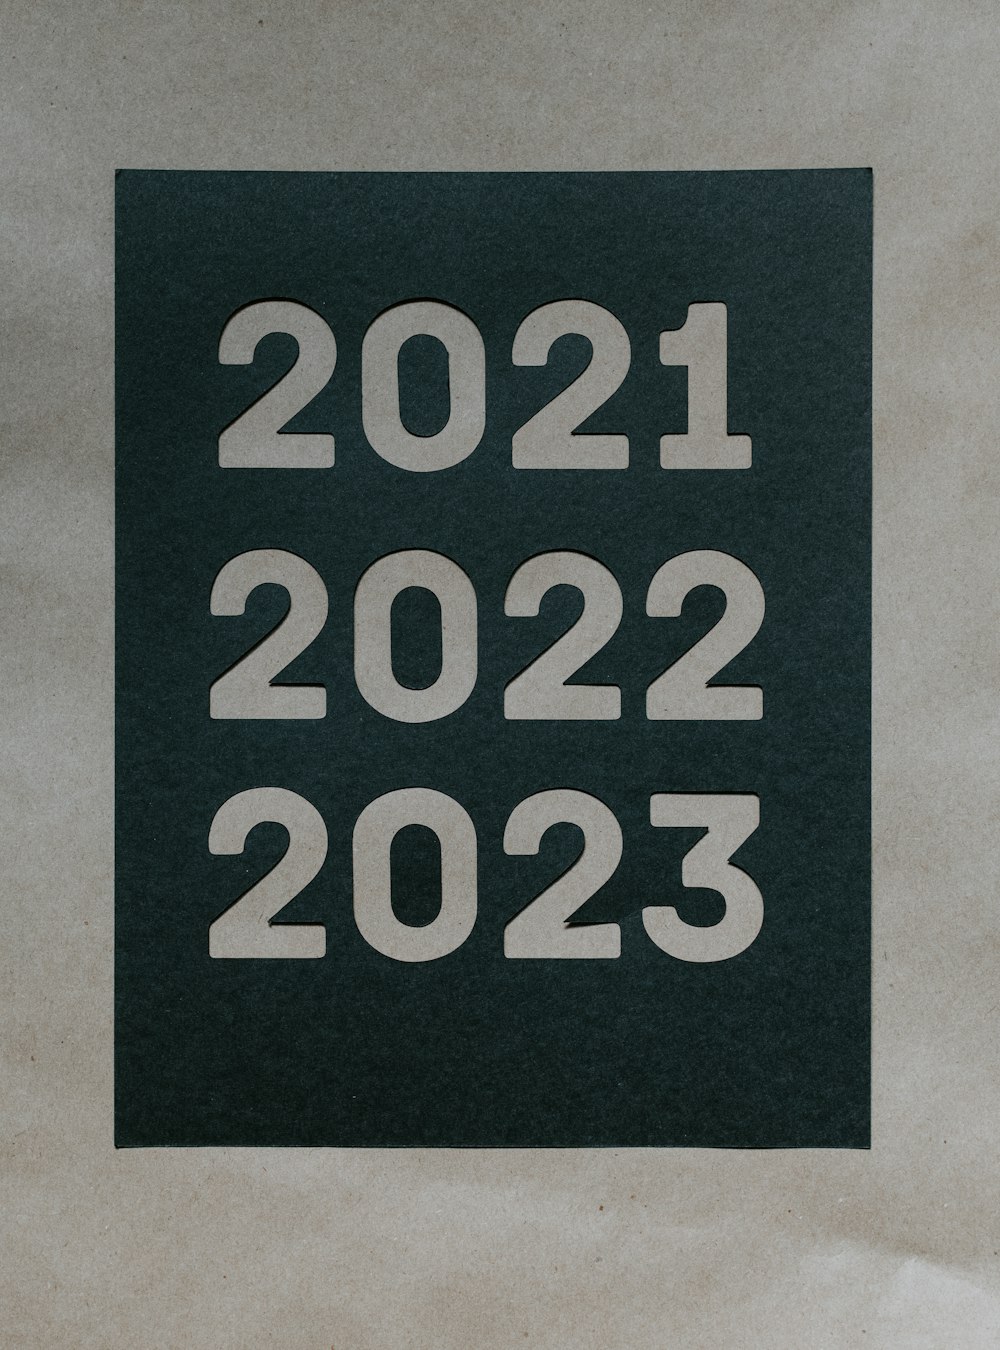 Un pedazo de papel con los números 2012 - 2013 impresos en él